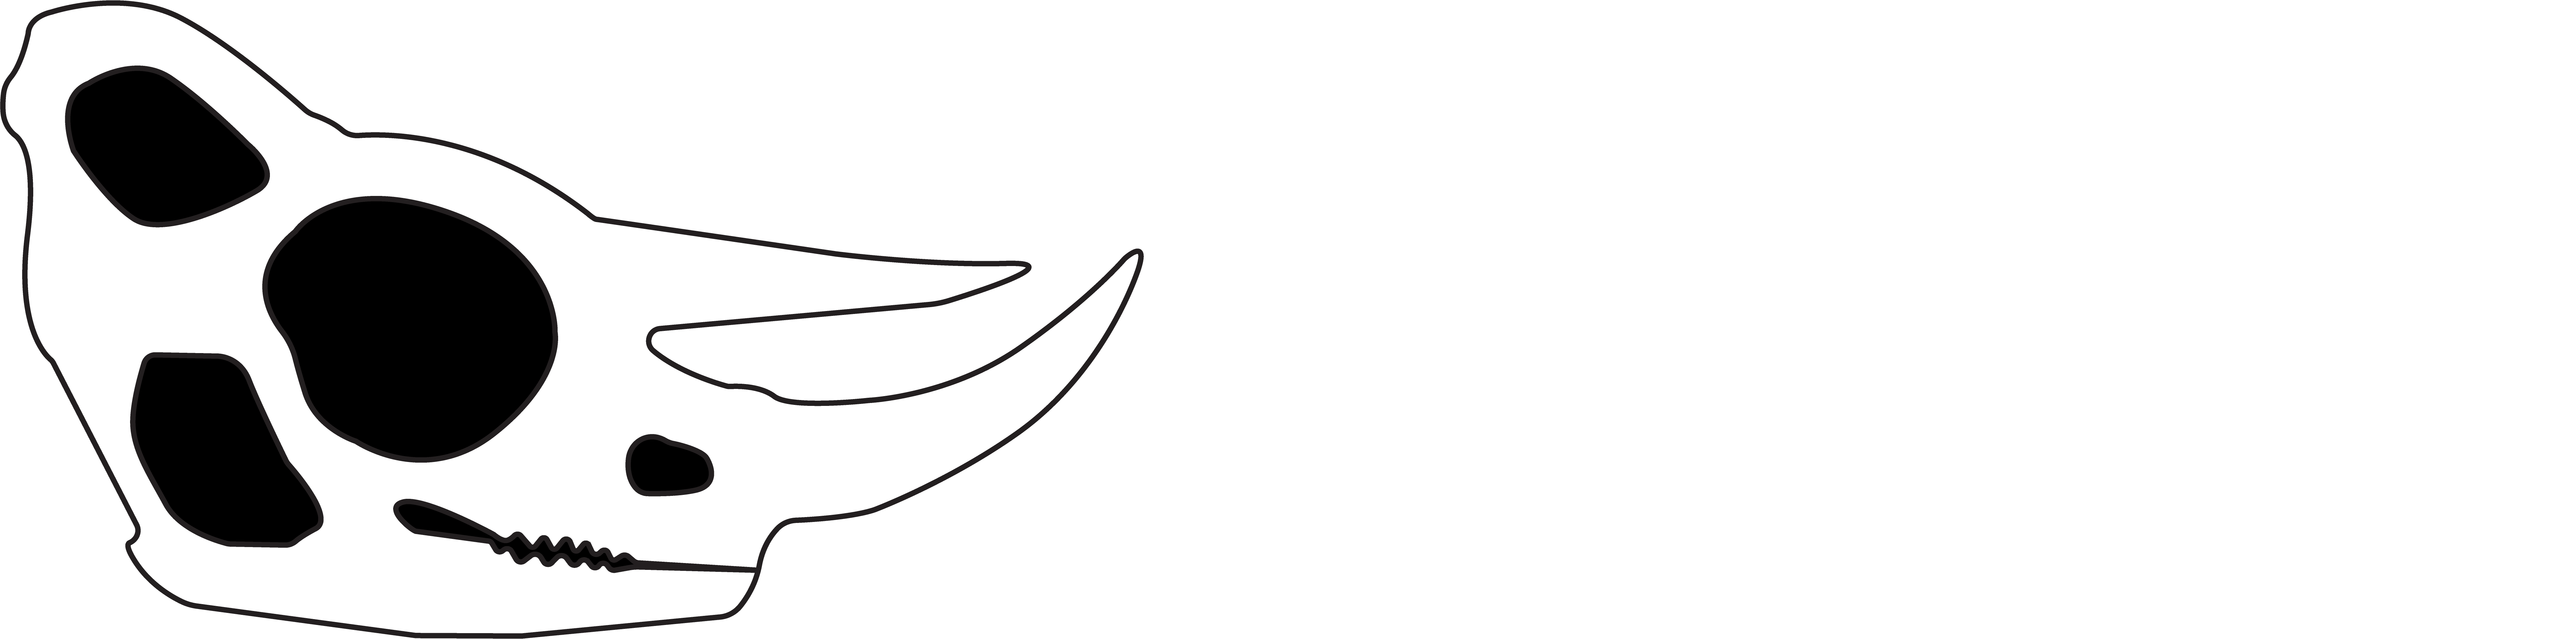 Chameleon Dynamics